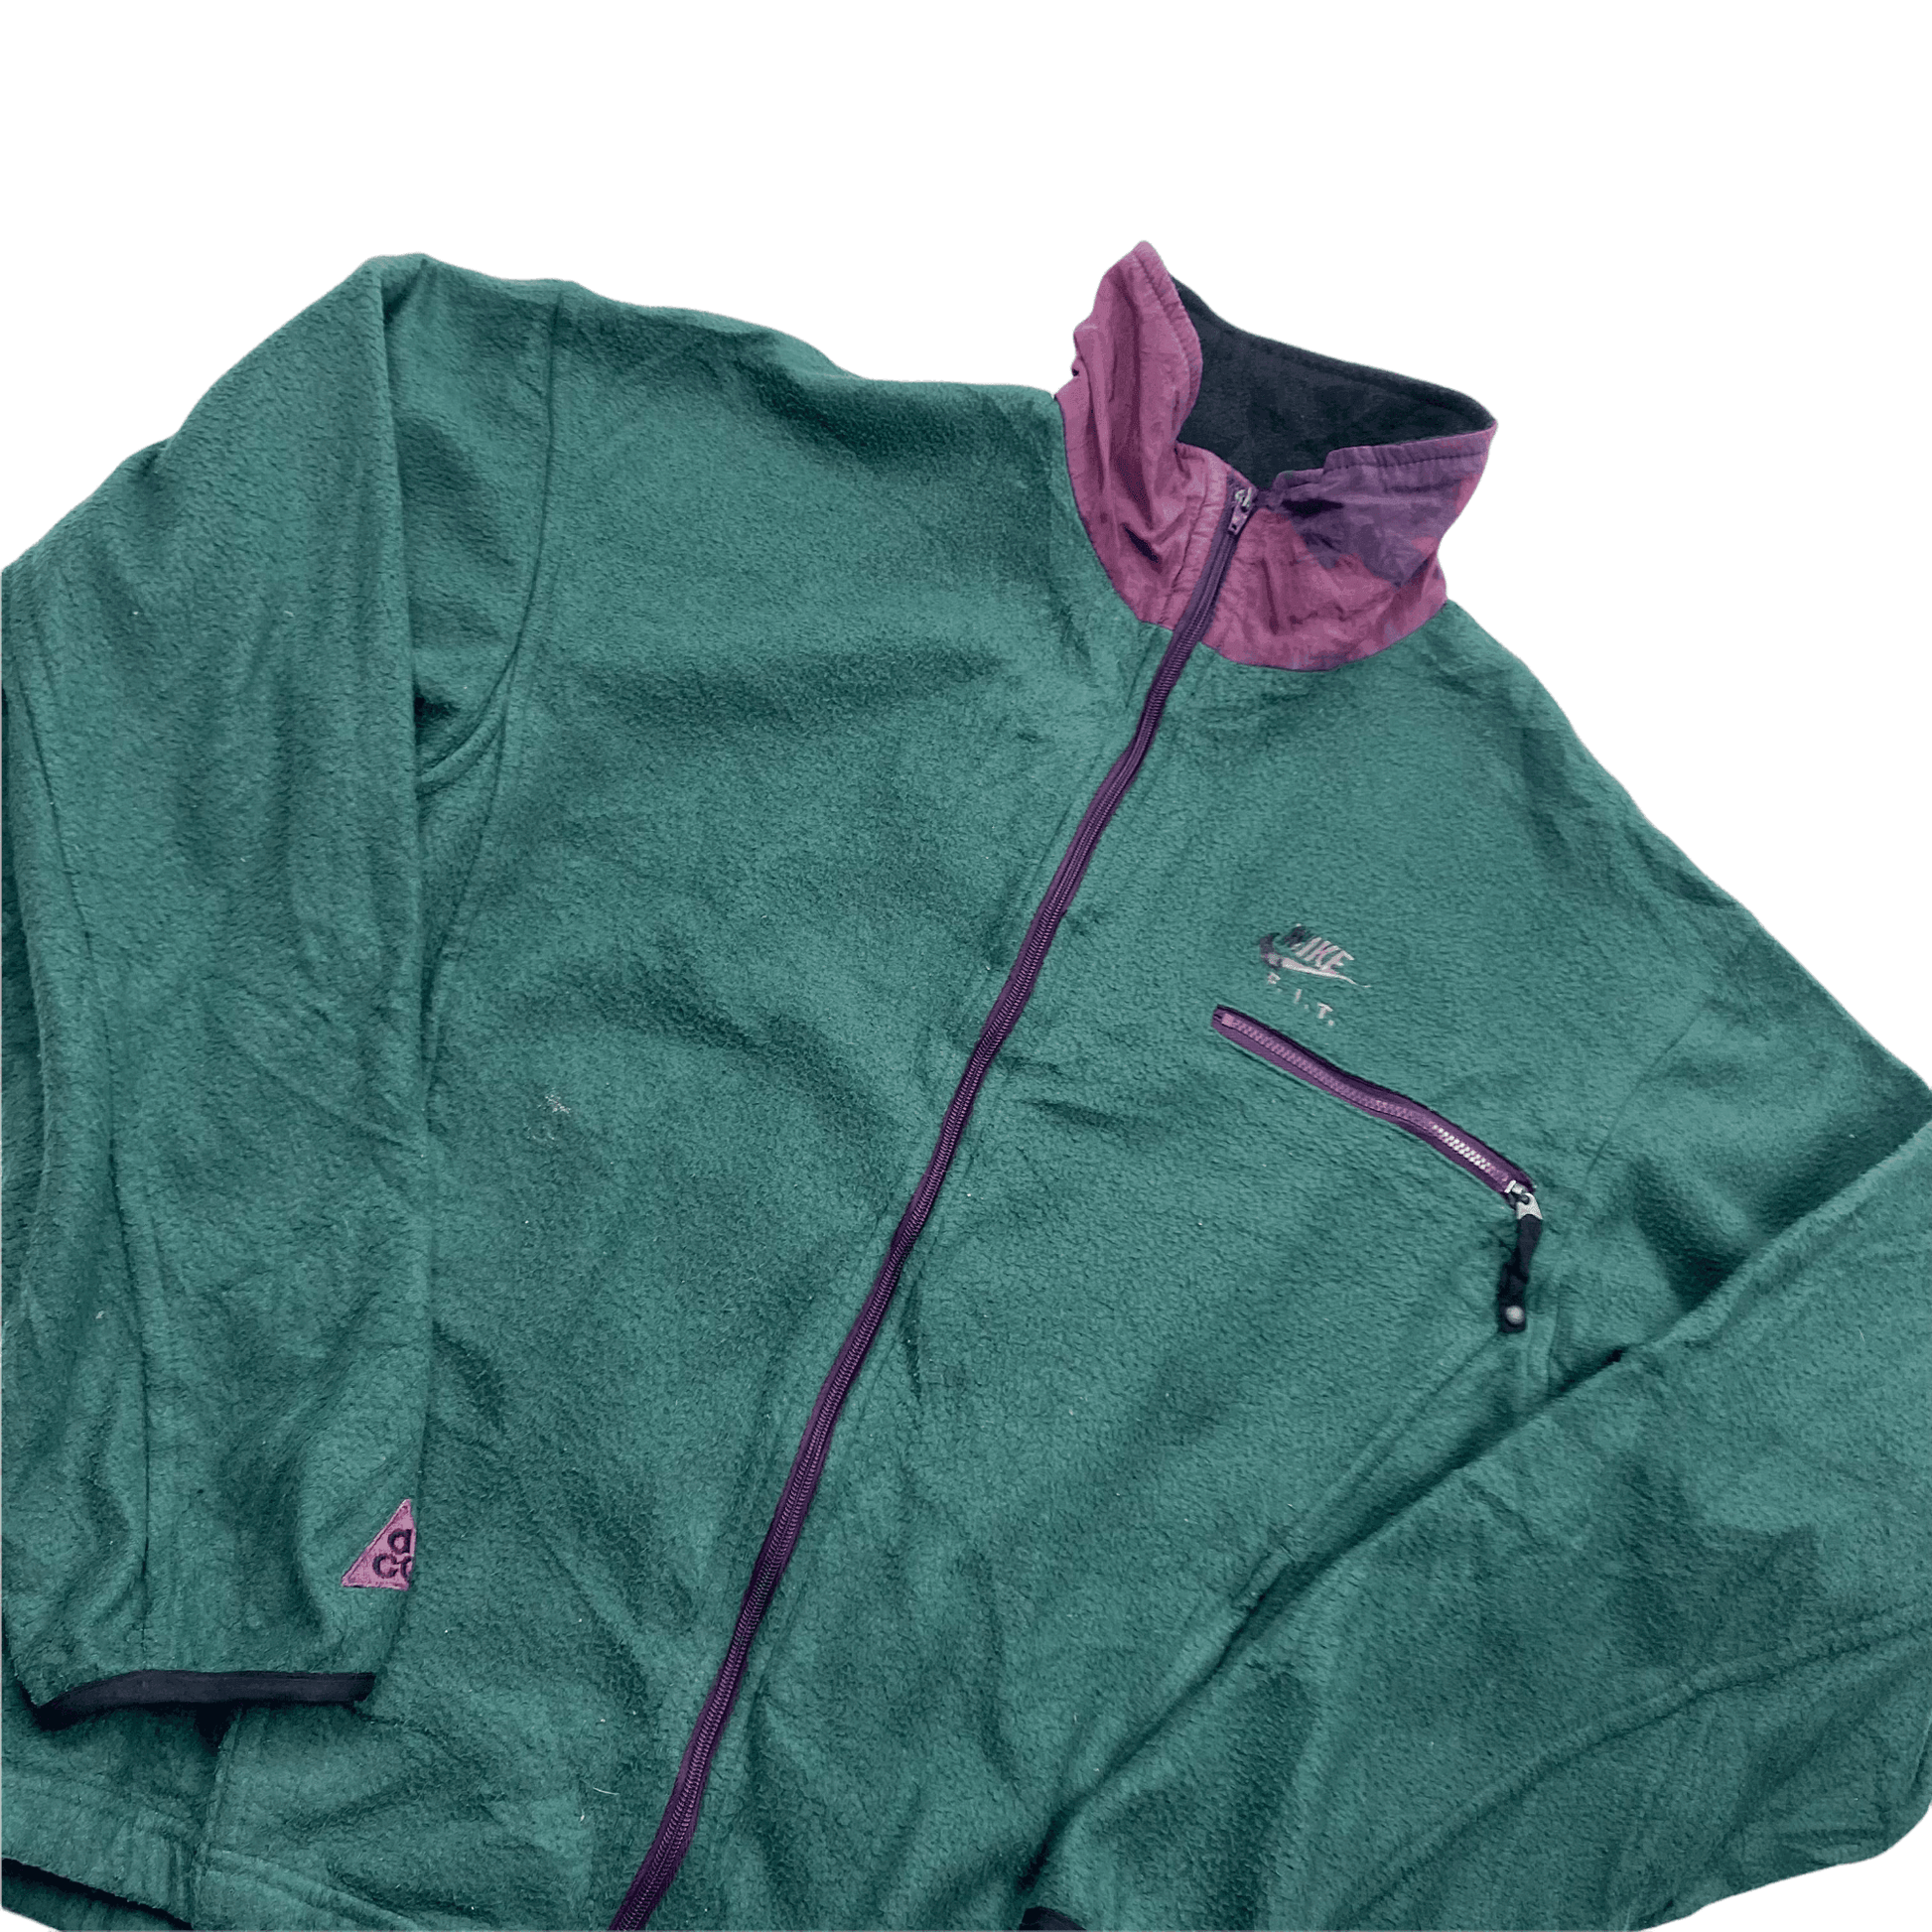 Vintage 90s Green Nike ACG / FIT Full Zip Fleece - Small - The Streetwear Studio